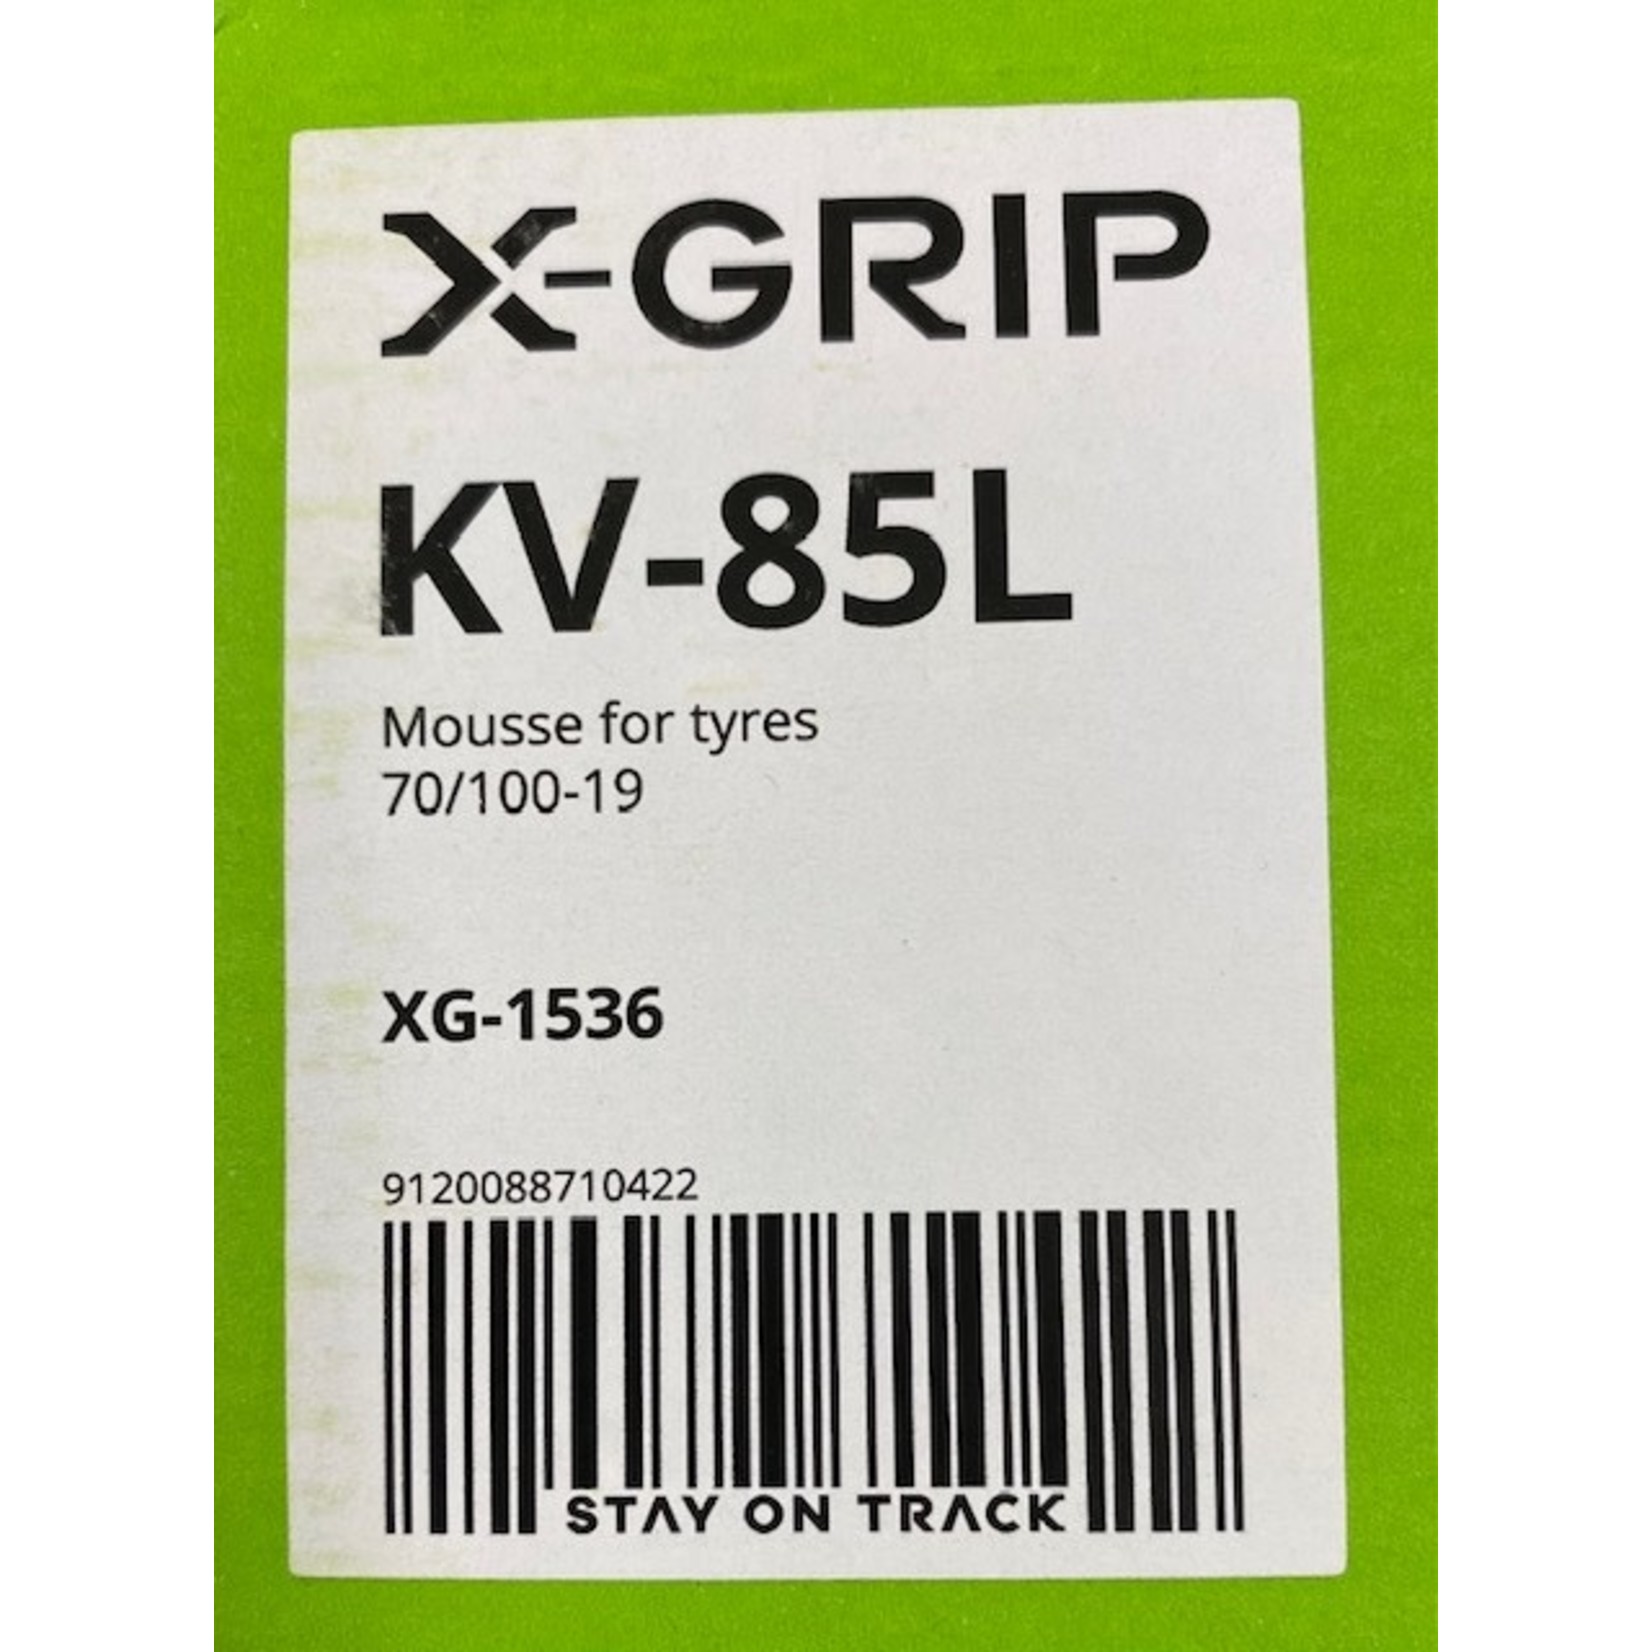 X-GRIP STAY ON TRACK X-Grip KV-85L 70/100-19